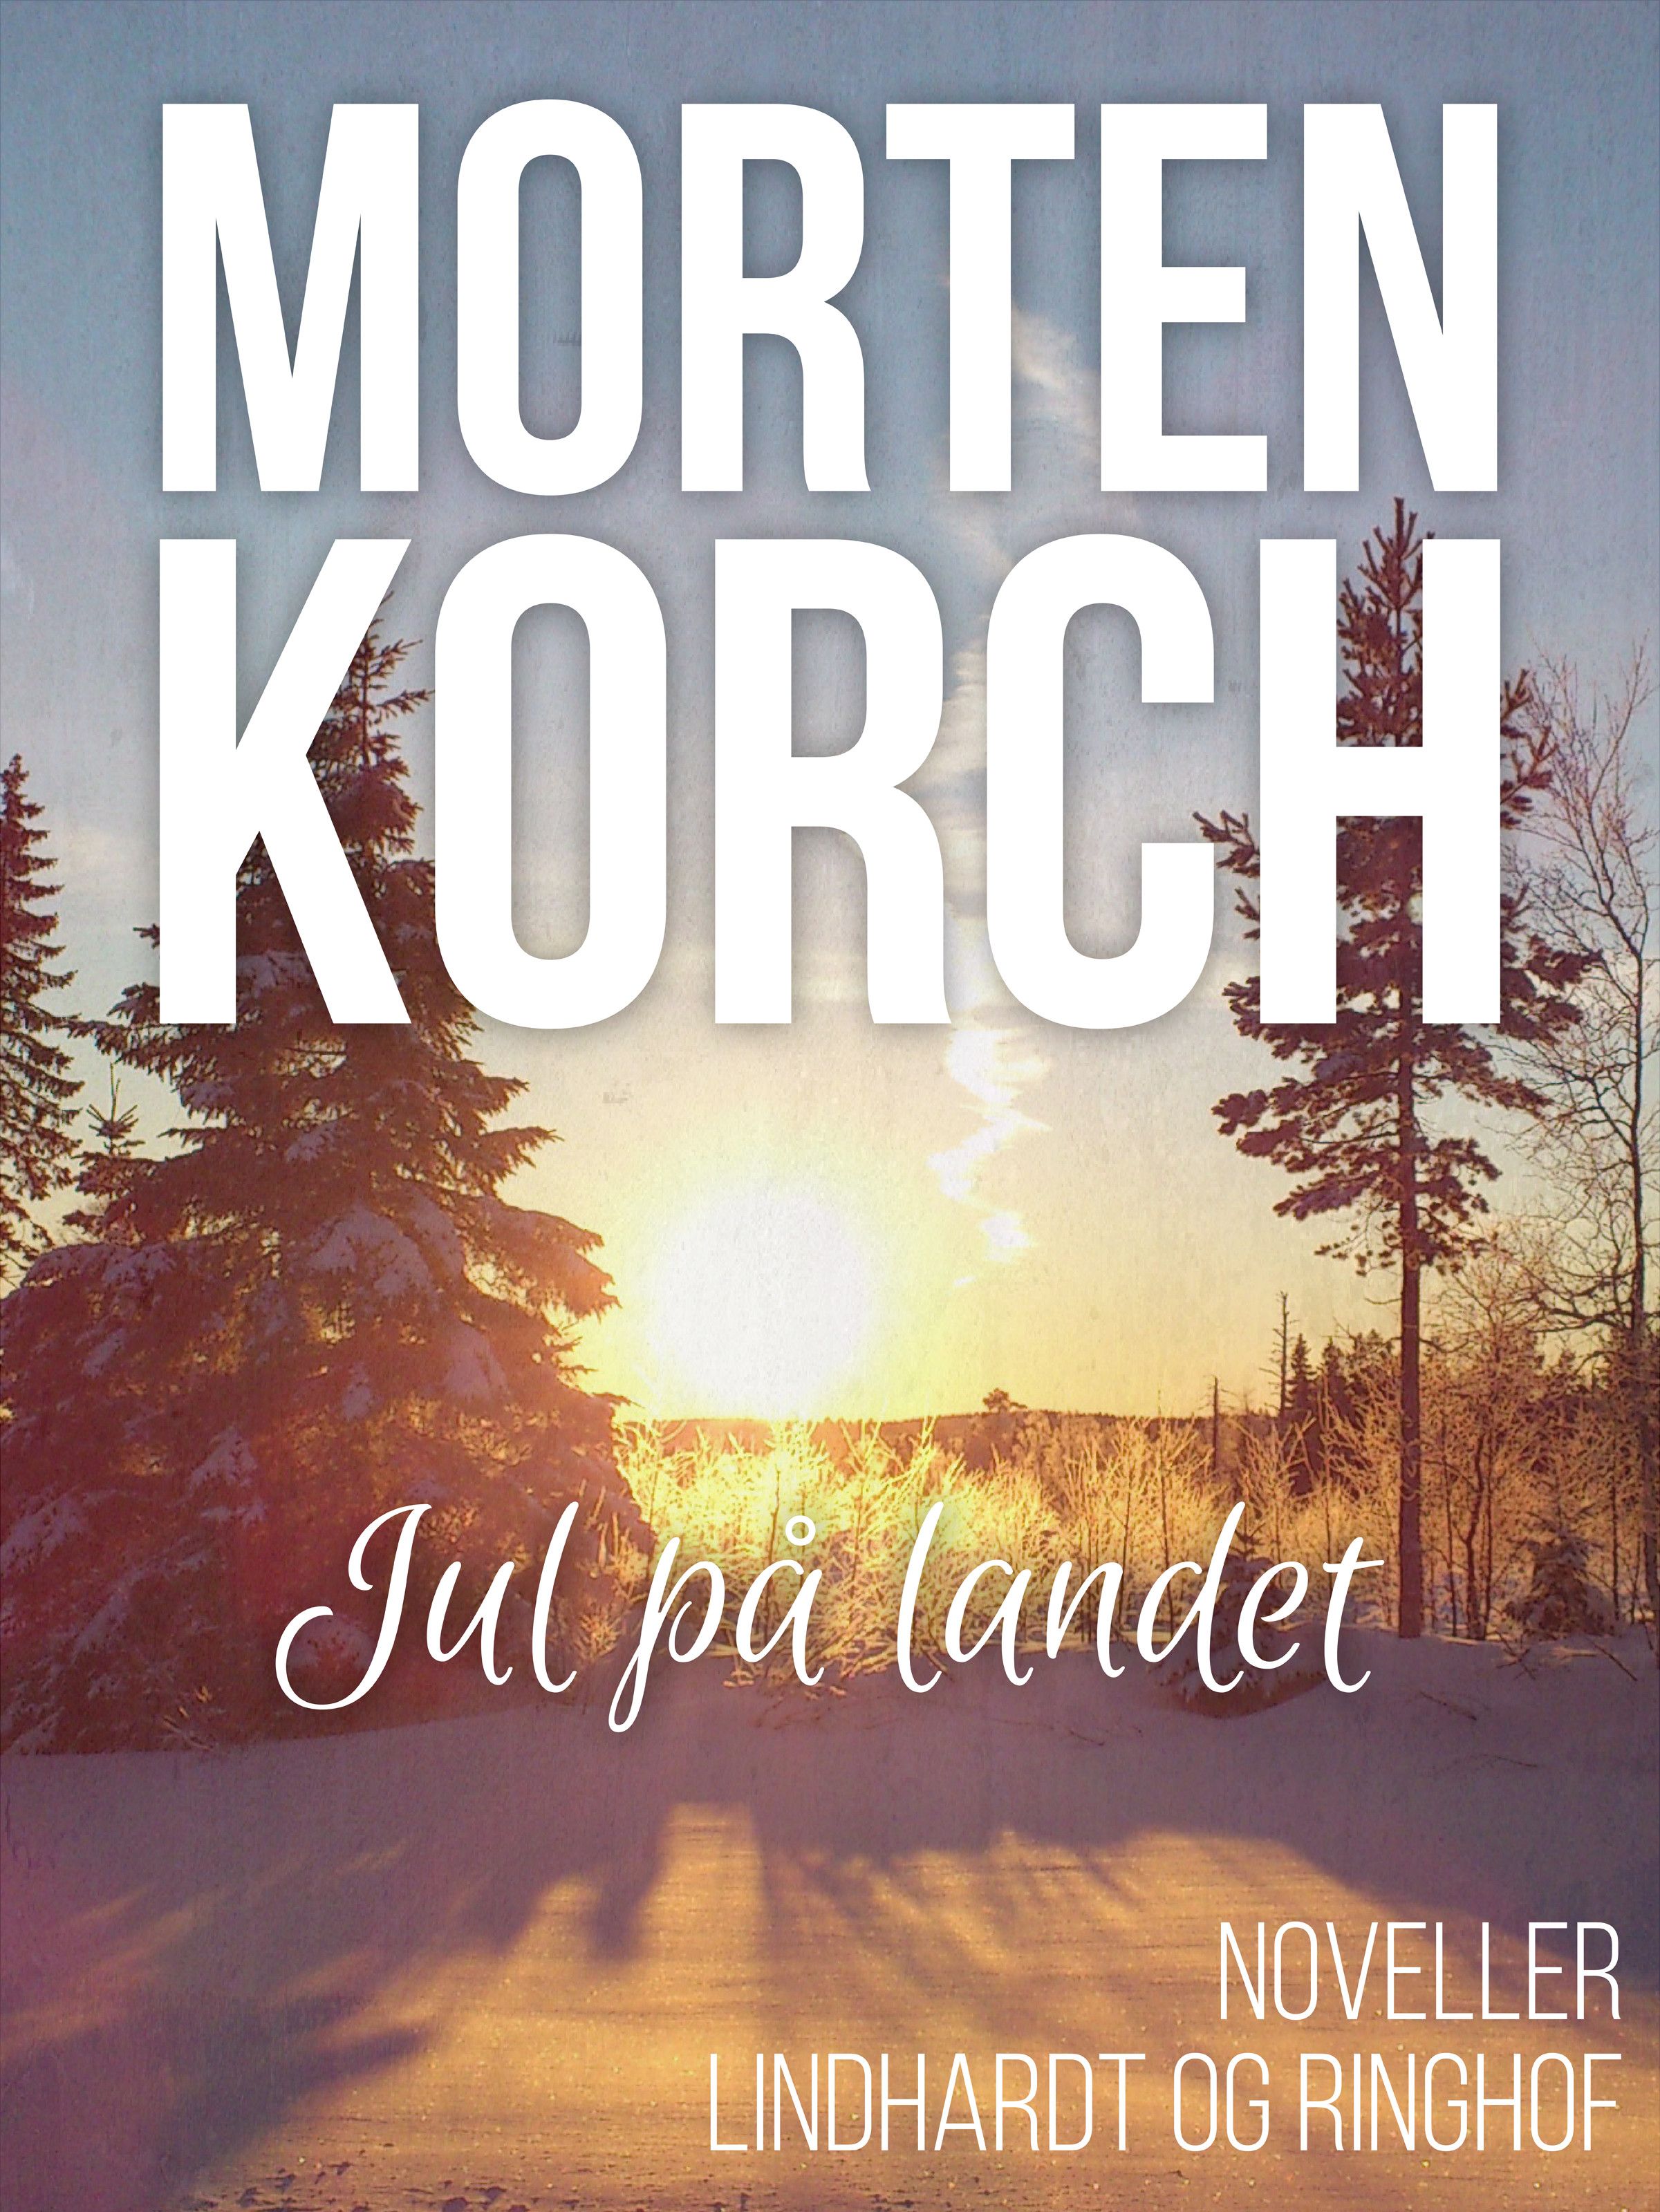 Jul på landet, audiobook by Morten Korch